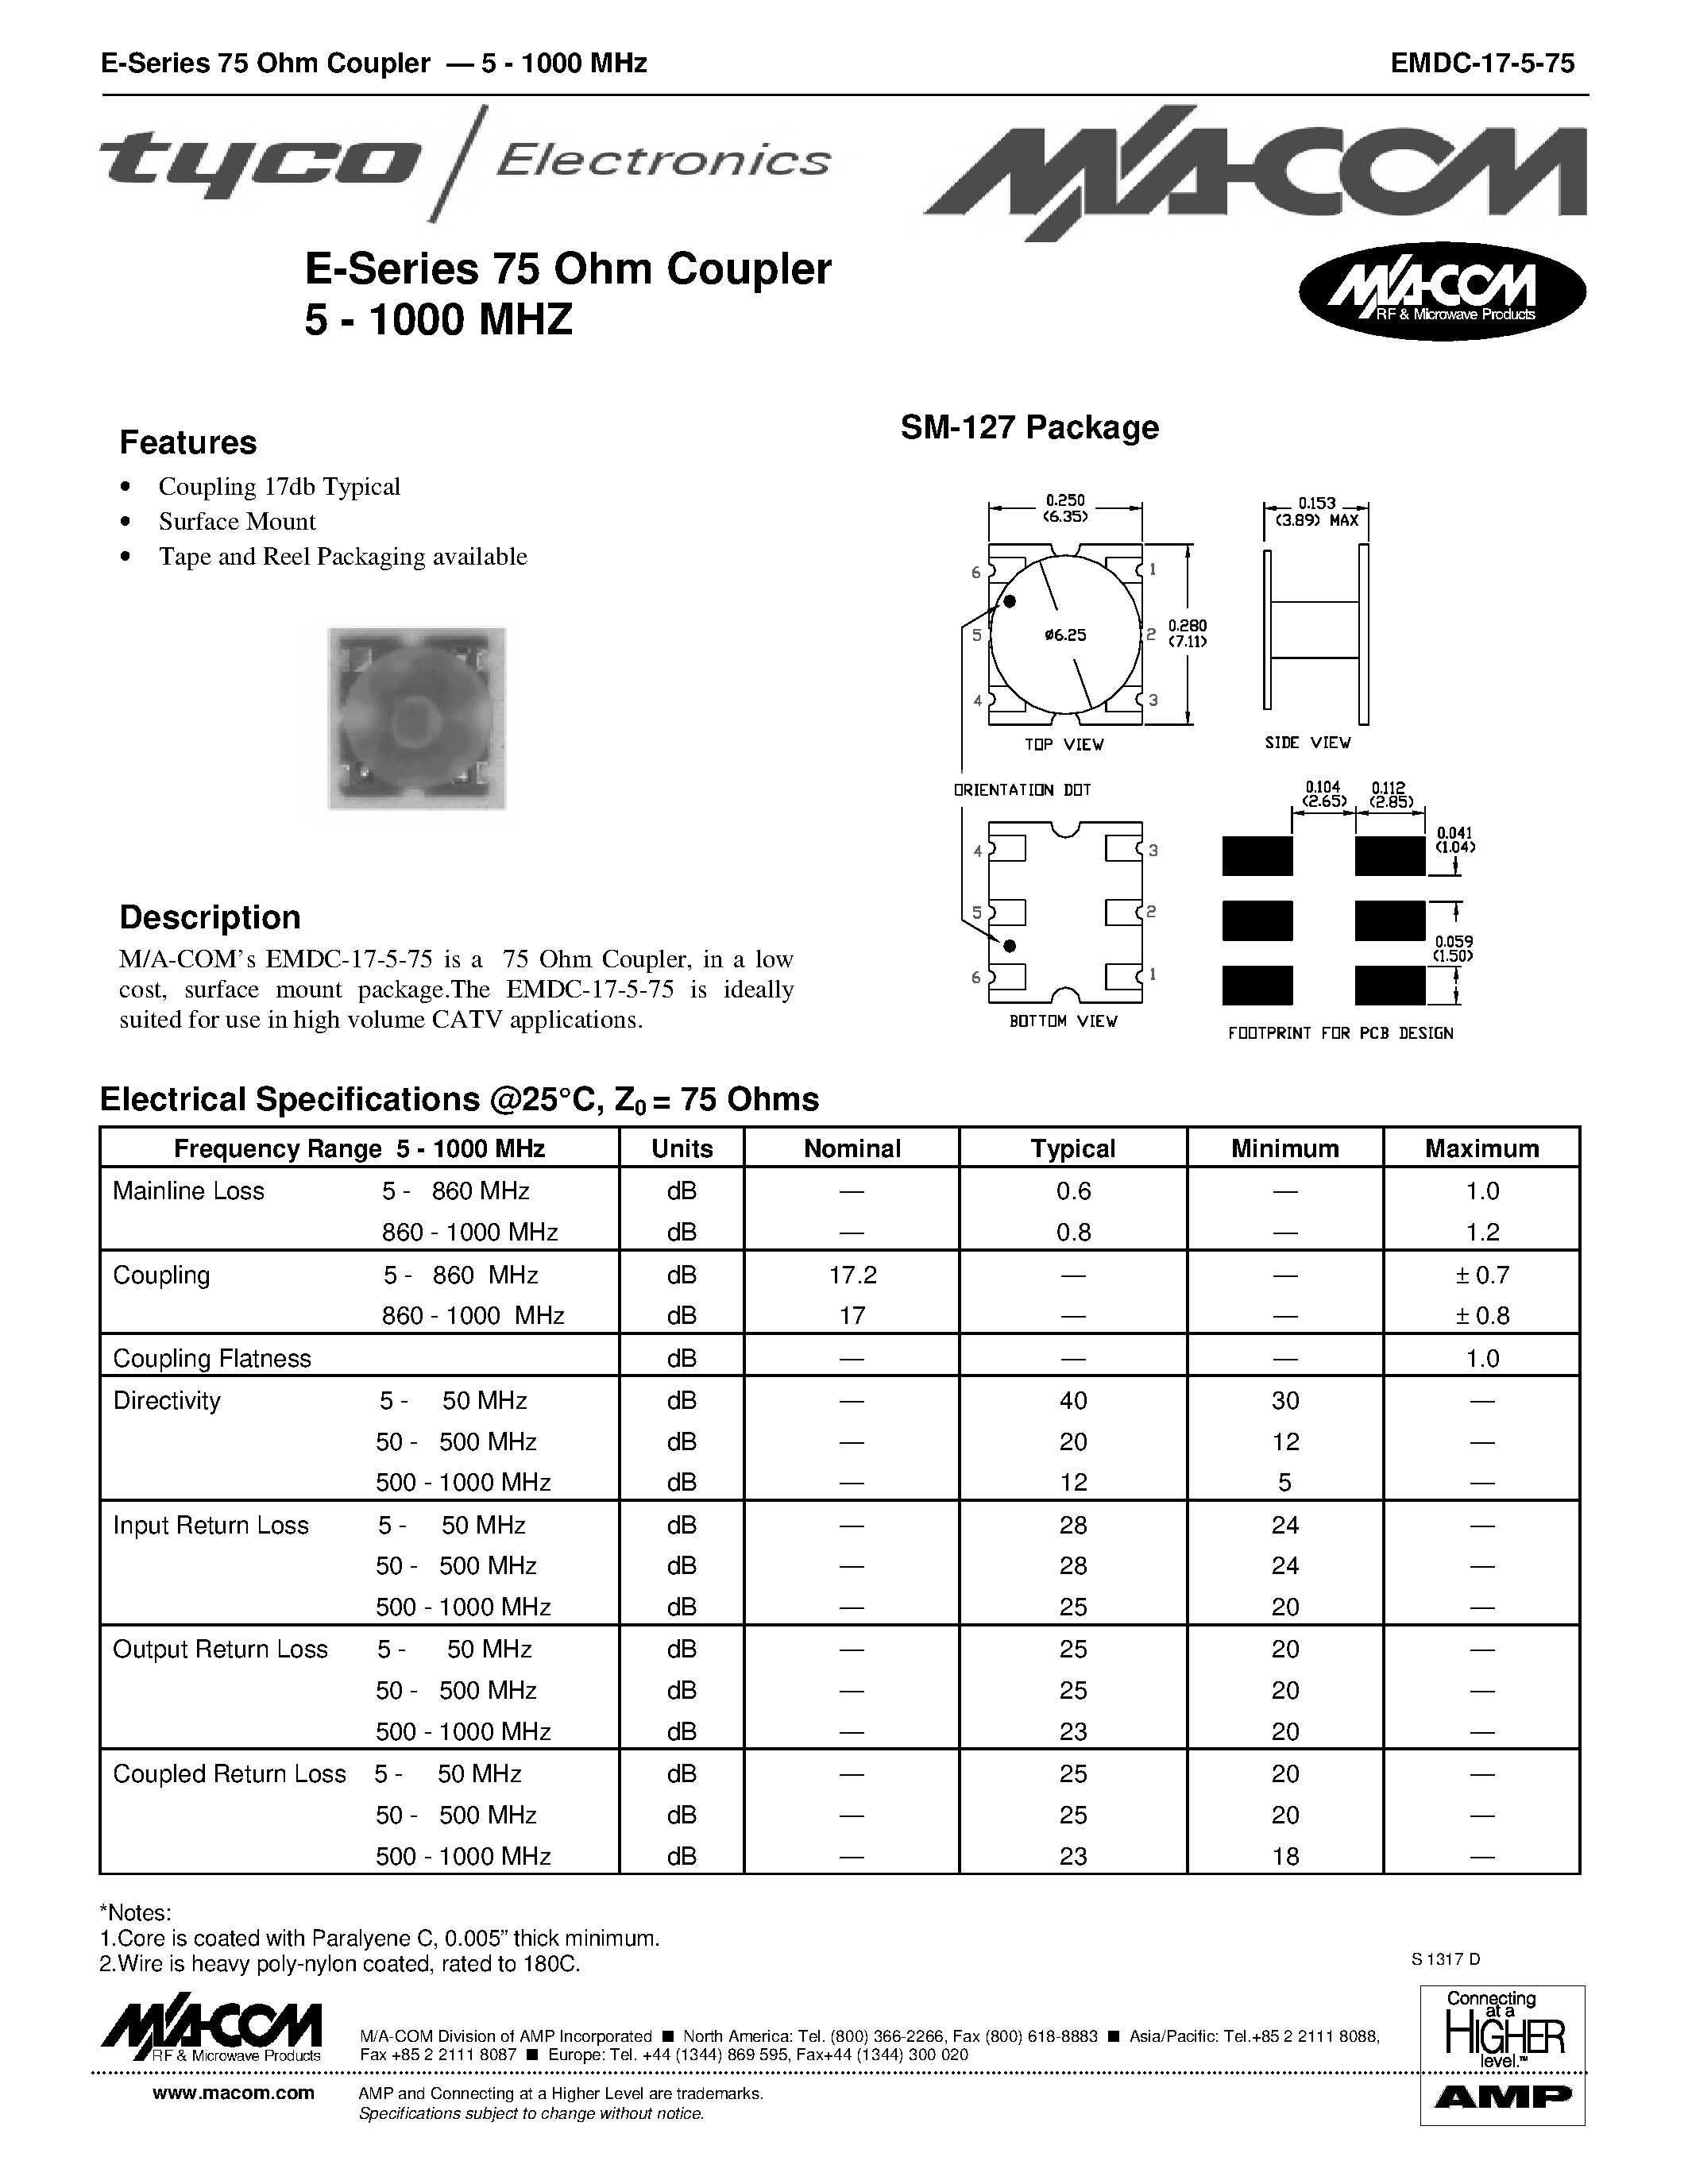 Даташит EMDC-17-5-75 - E-Series 75 Ohm Coupler 5 - 1000 MHZ страница 1